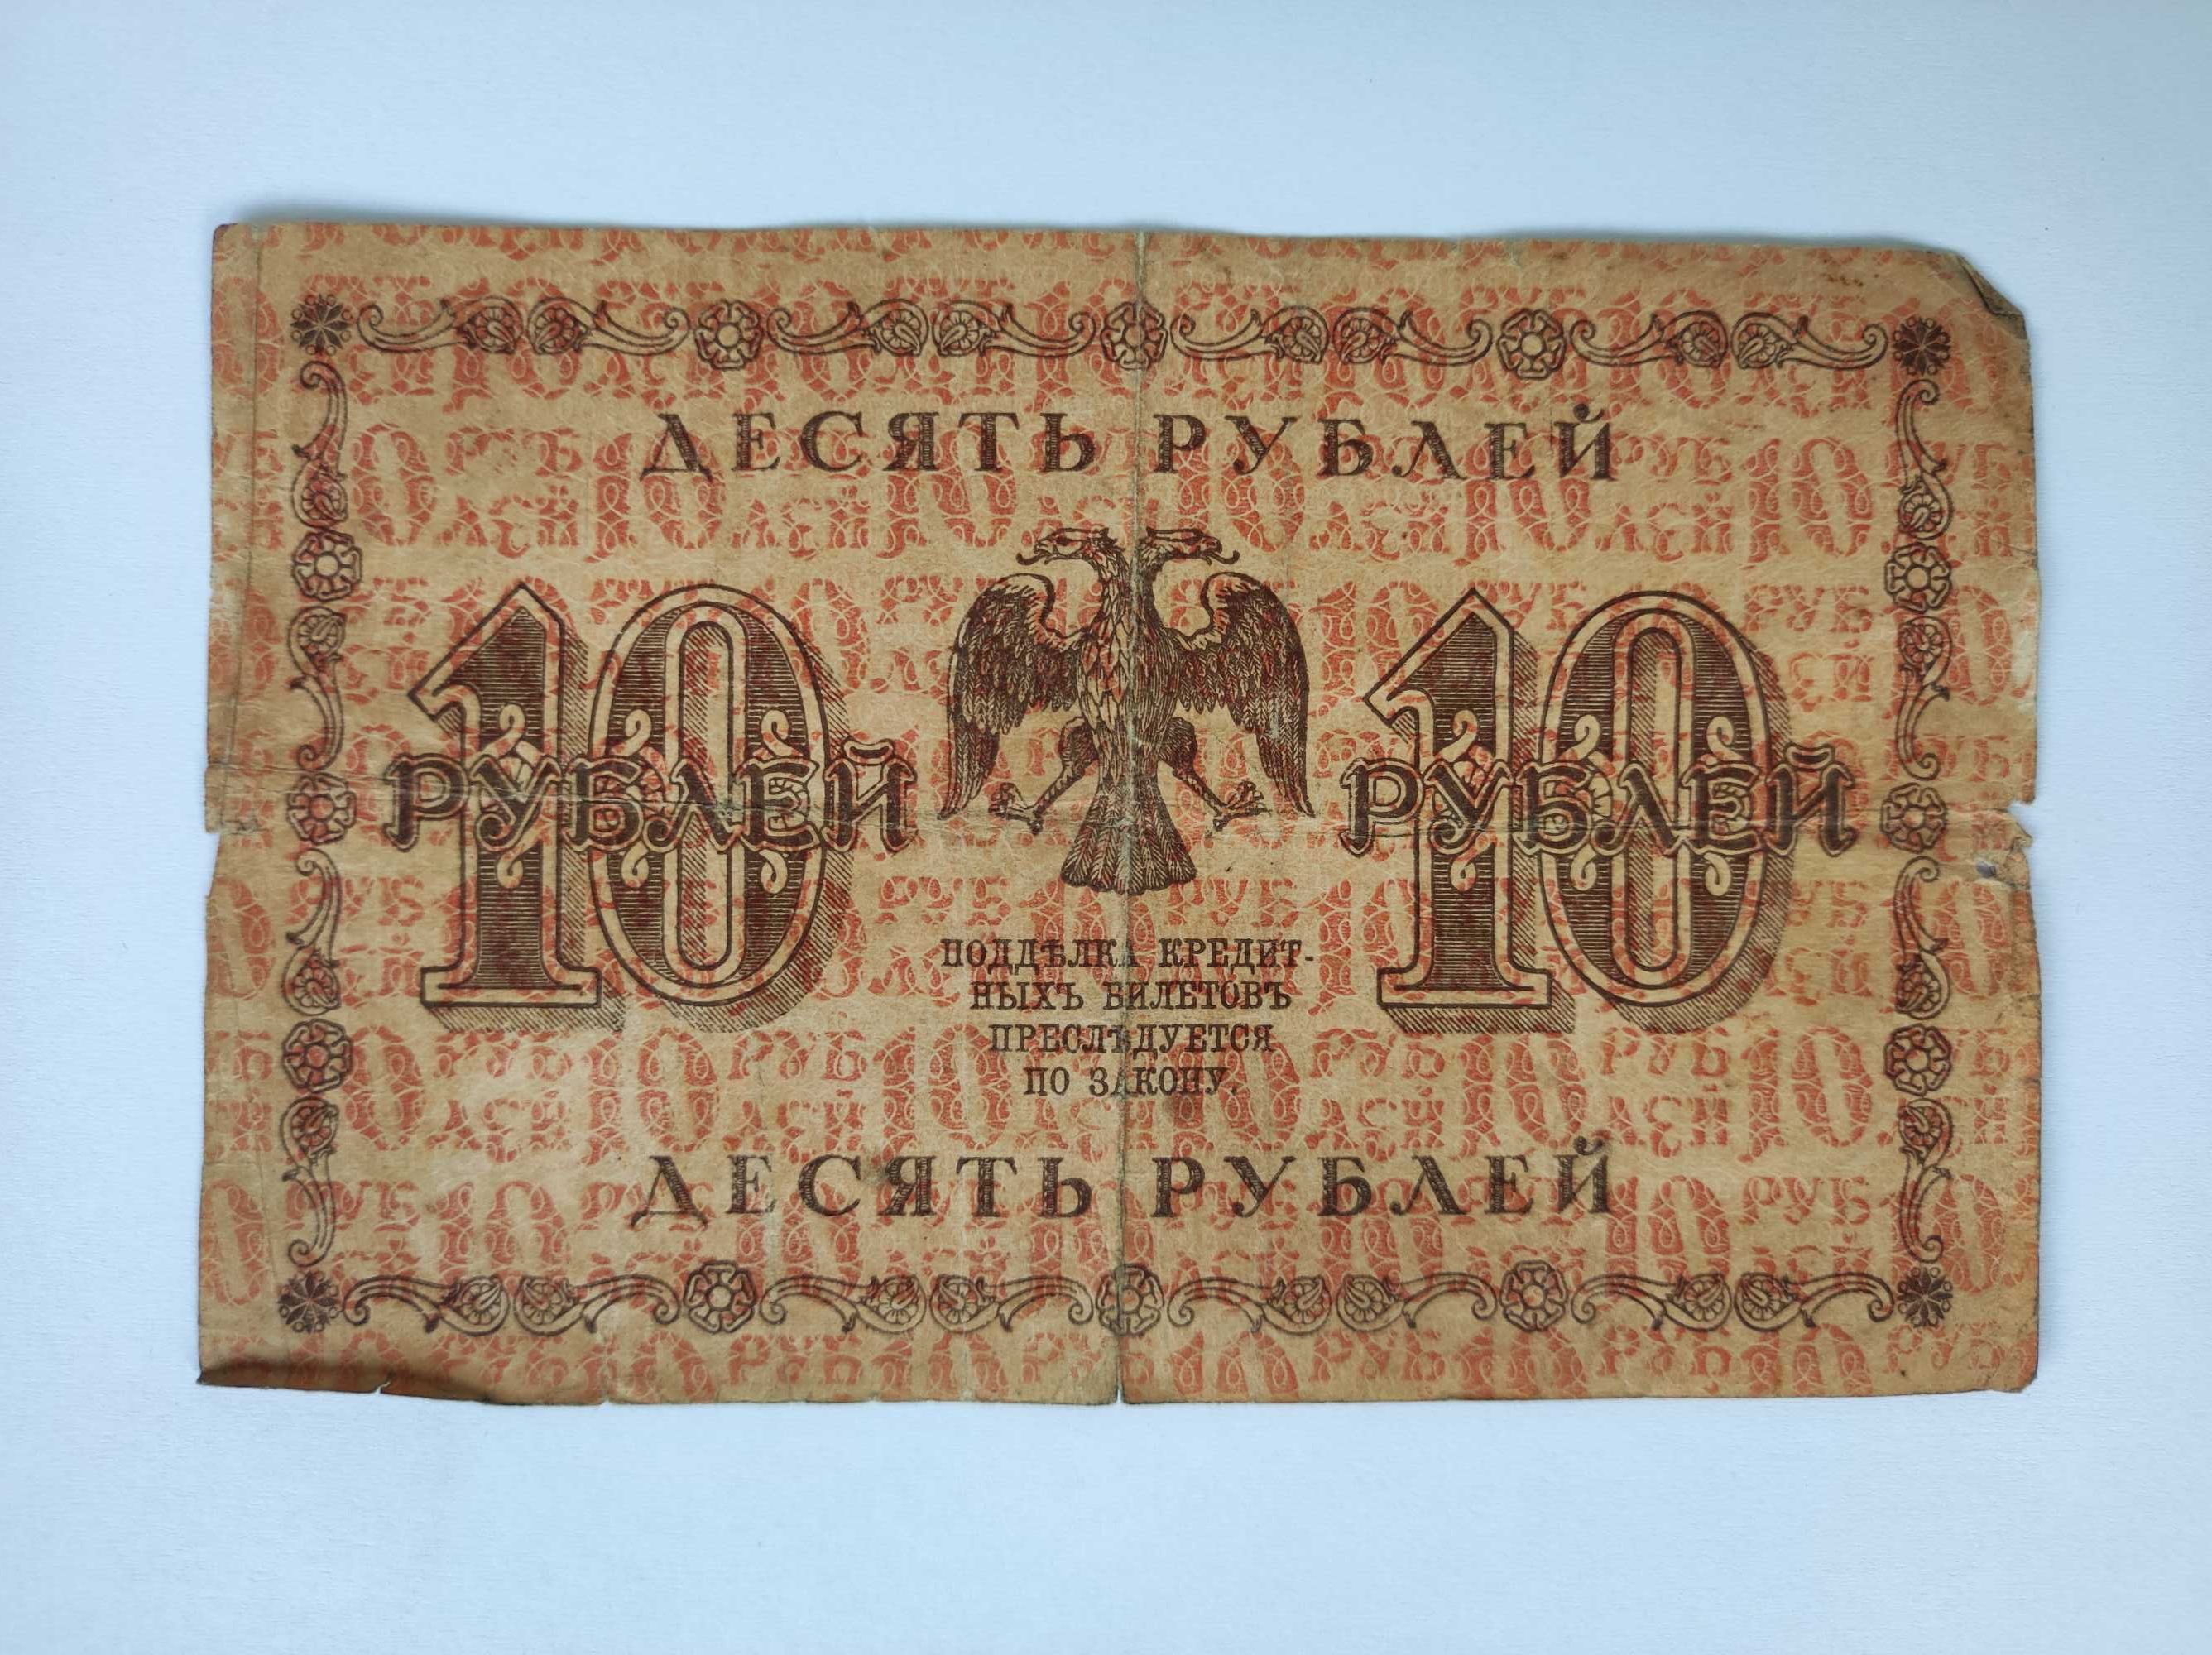 10 рублей банкнота временного правительсва 1918 г